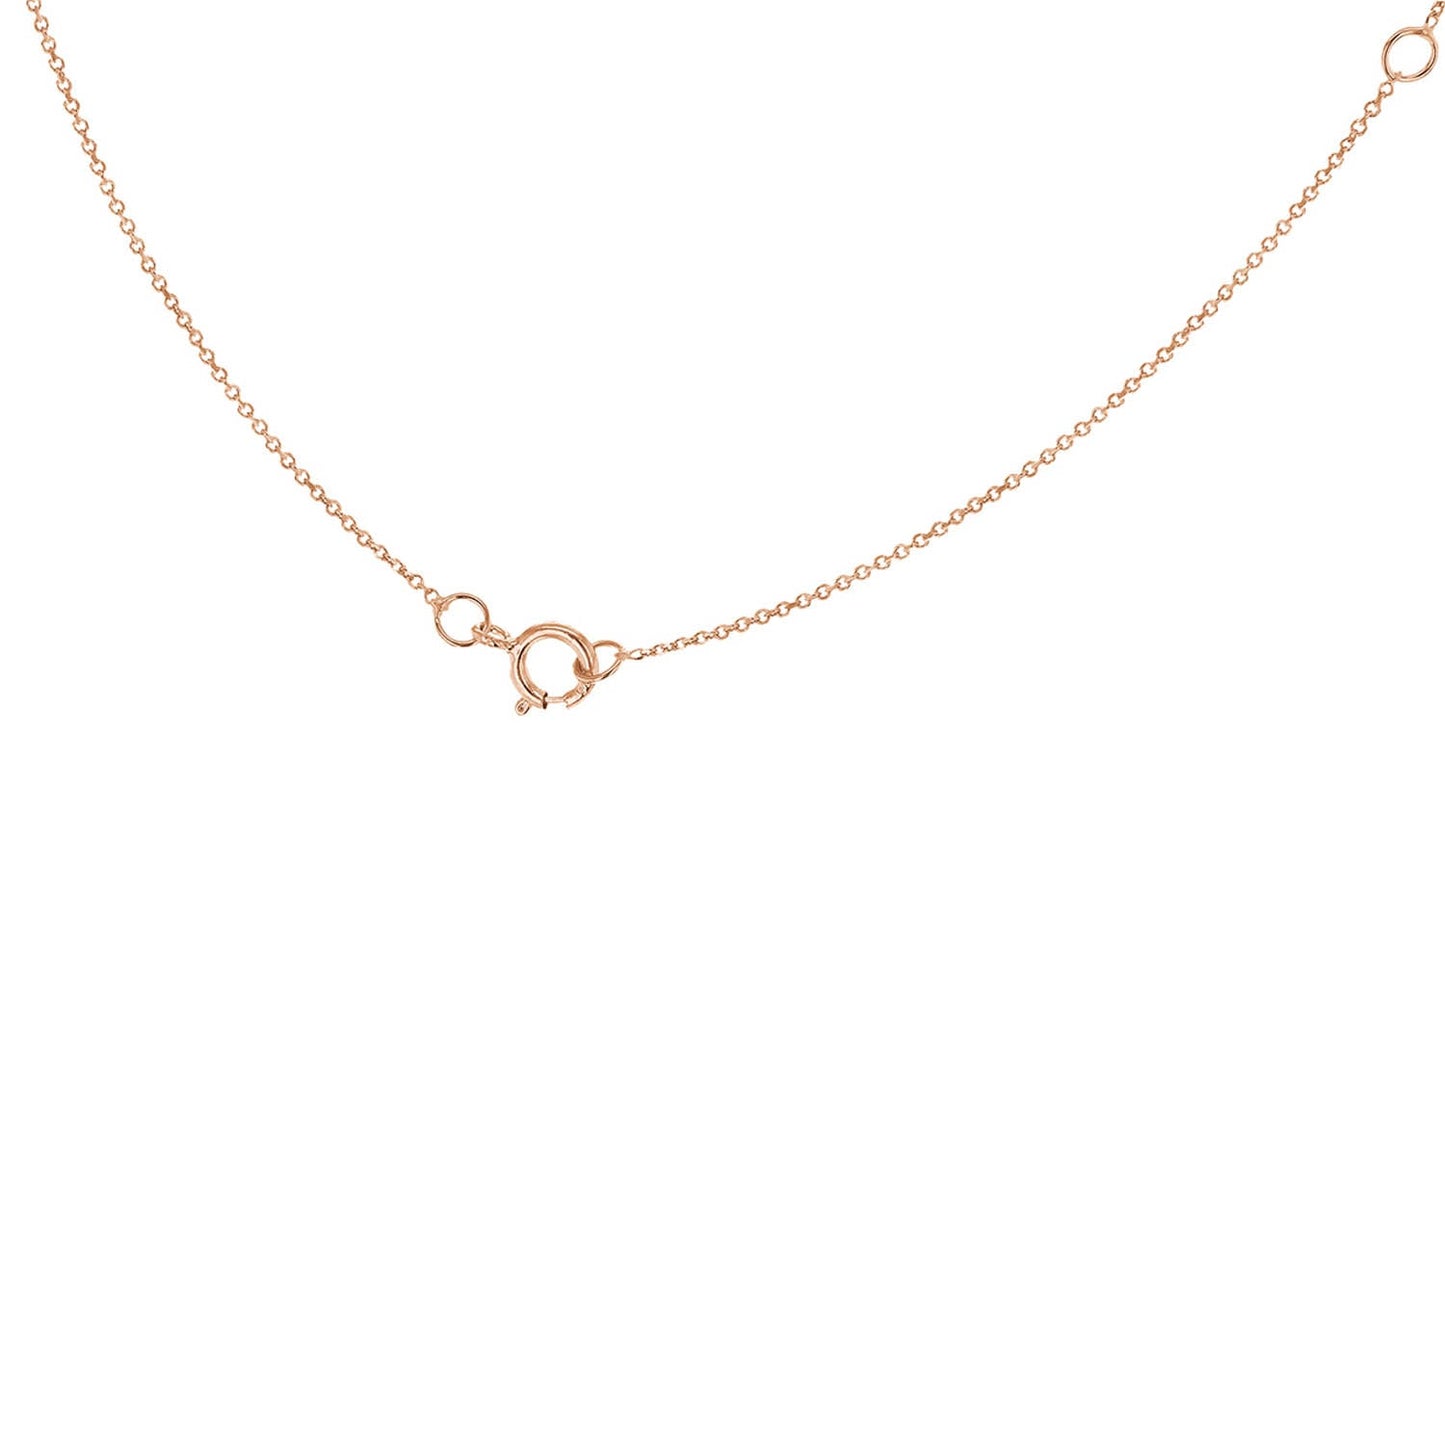 9K Rose Gold 'I' Initial Adjustable Letter Necklace 38/43cm